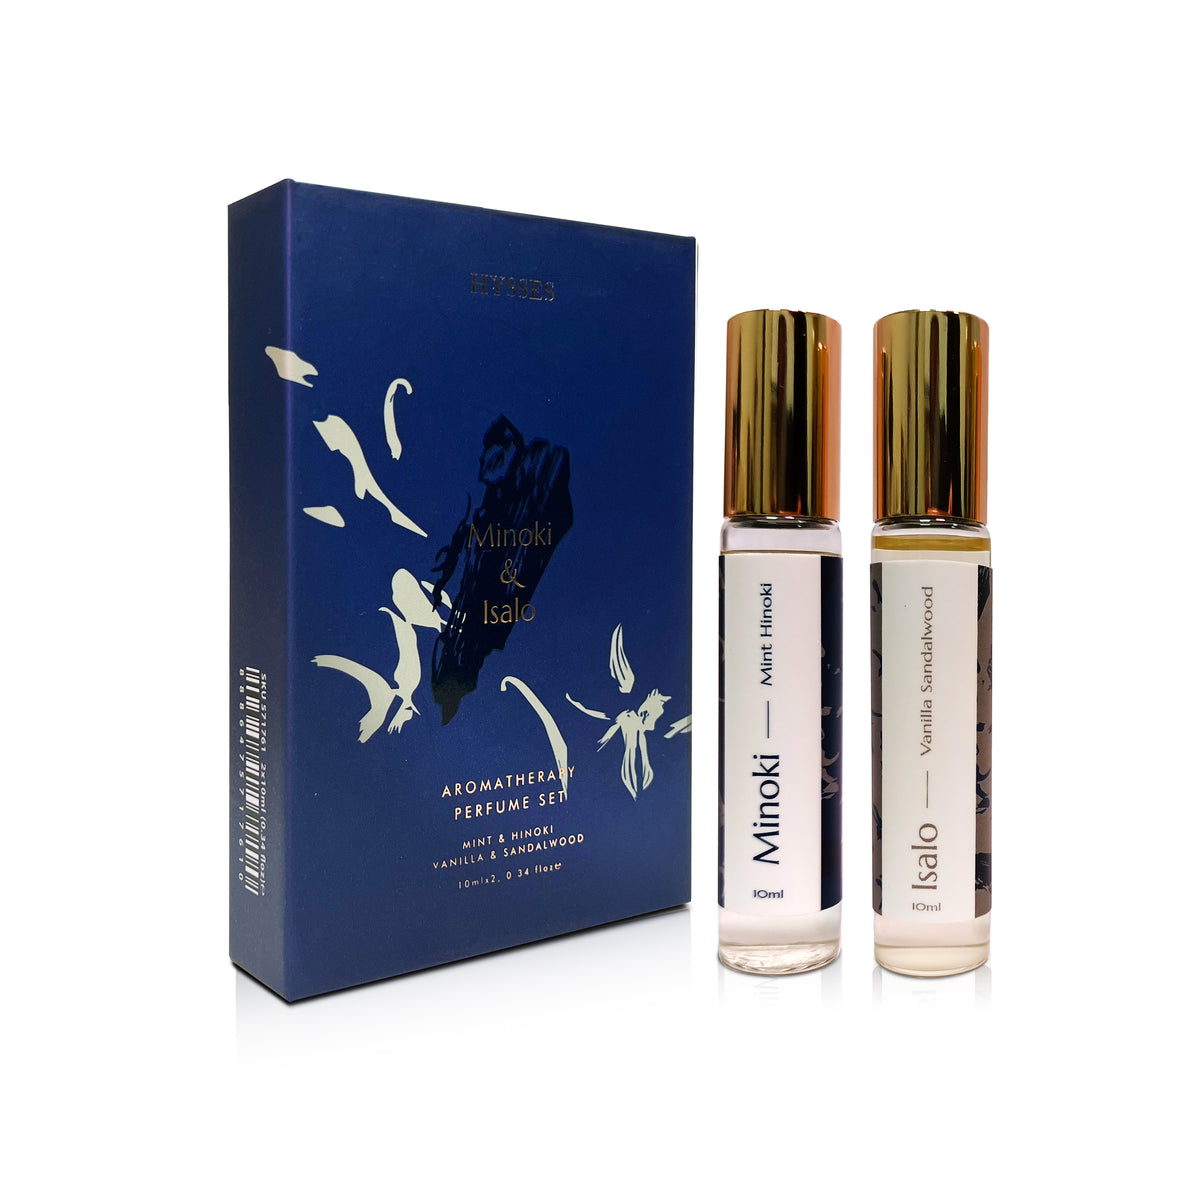 Aroma Perfume Set of 2 (Minoki, Isalo)